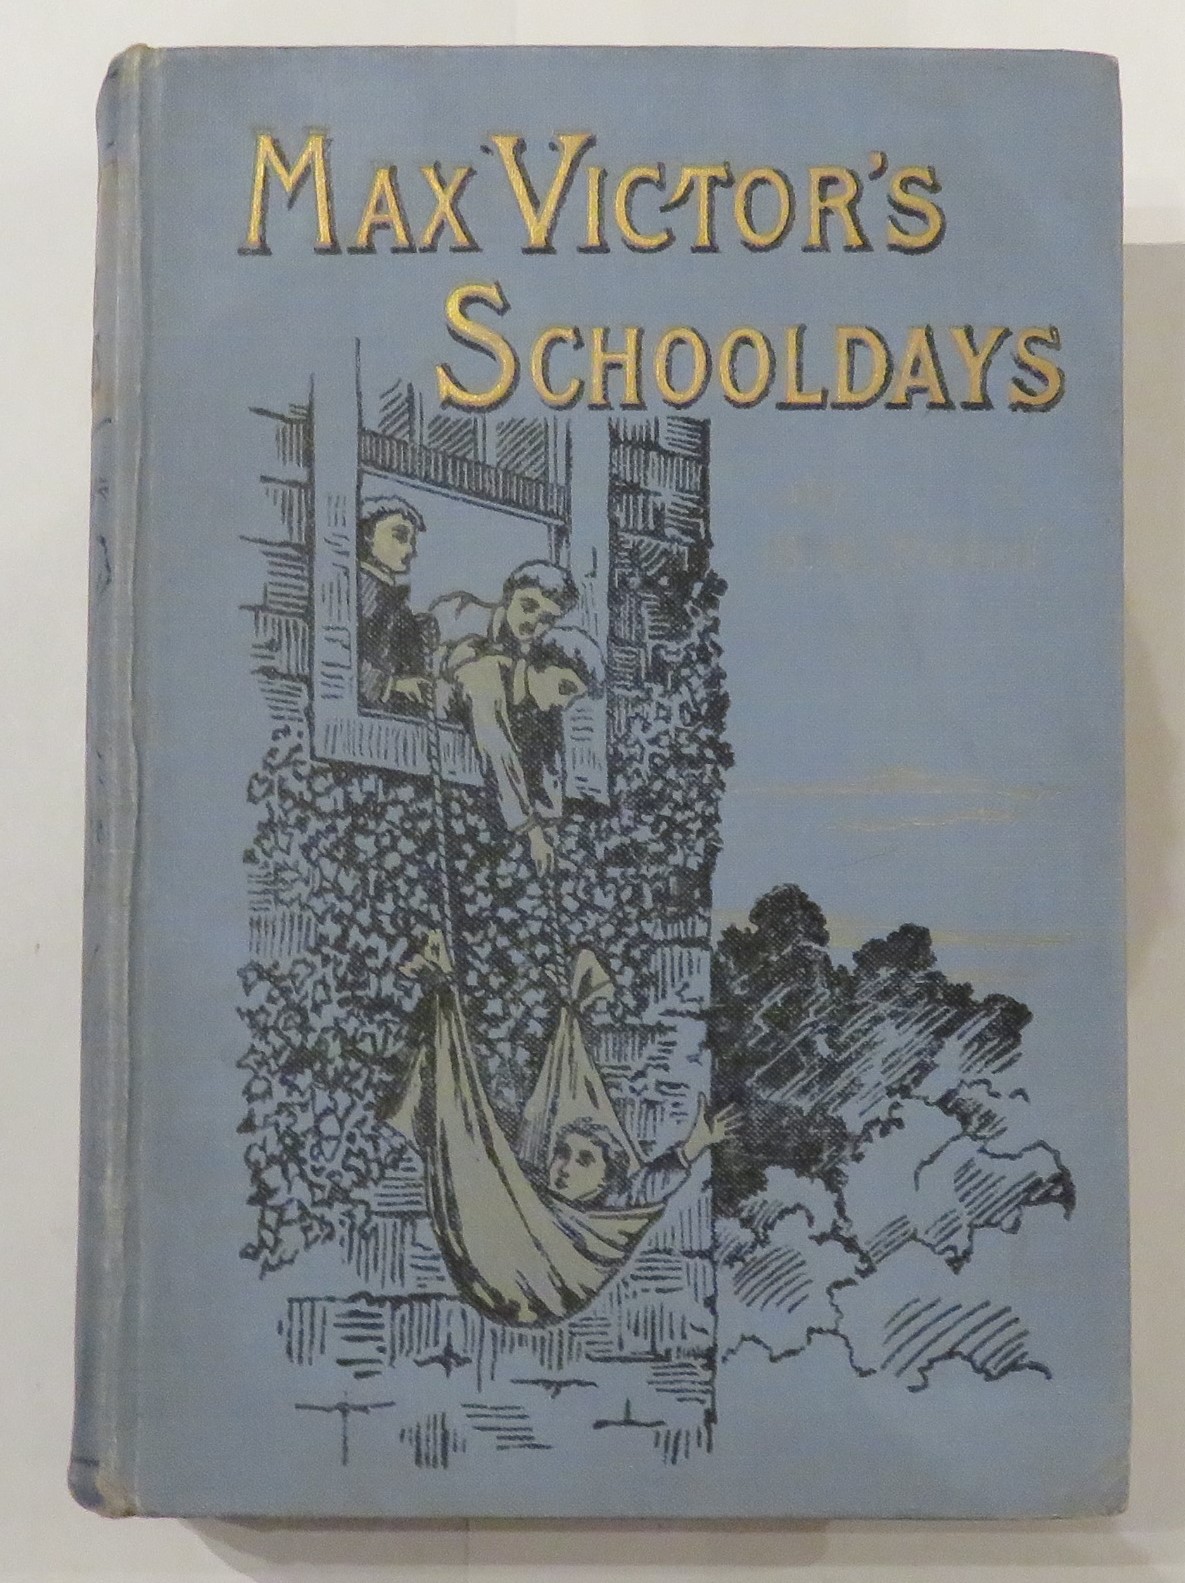 Max Victor's Schooldays